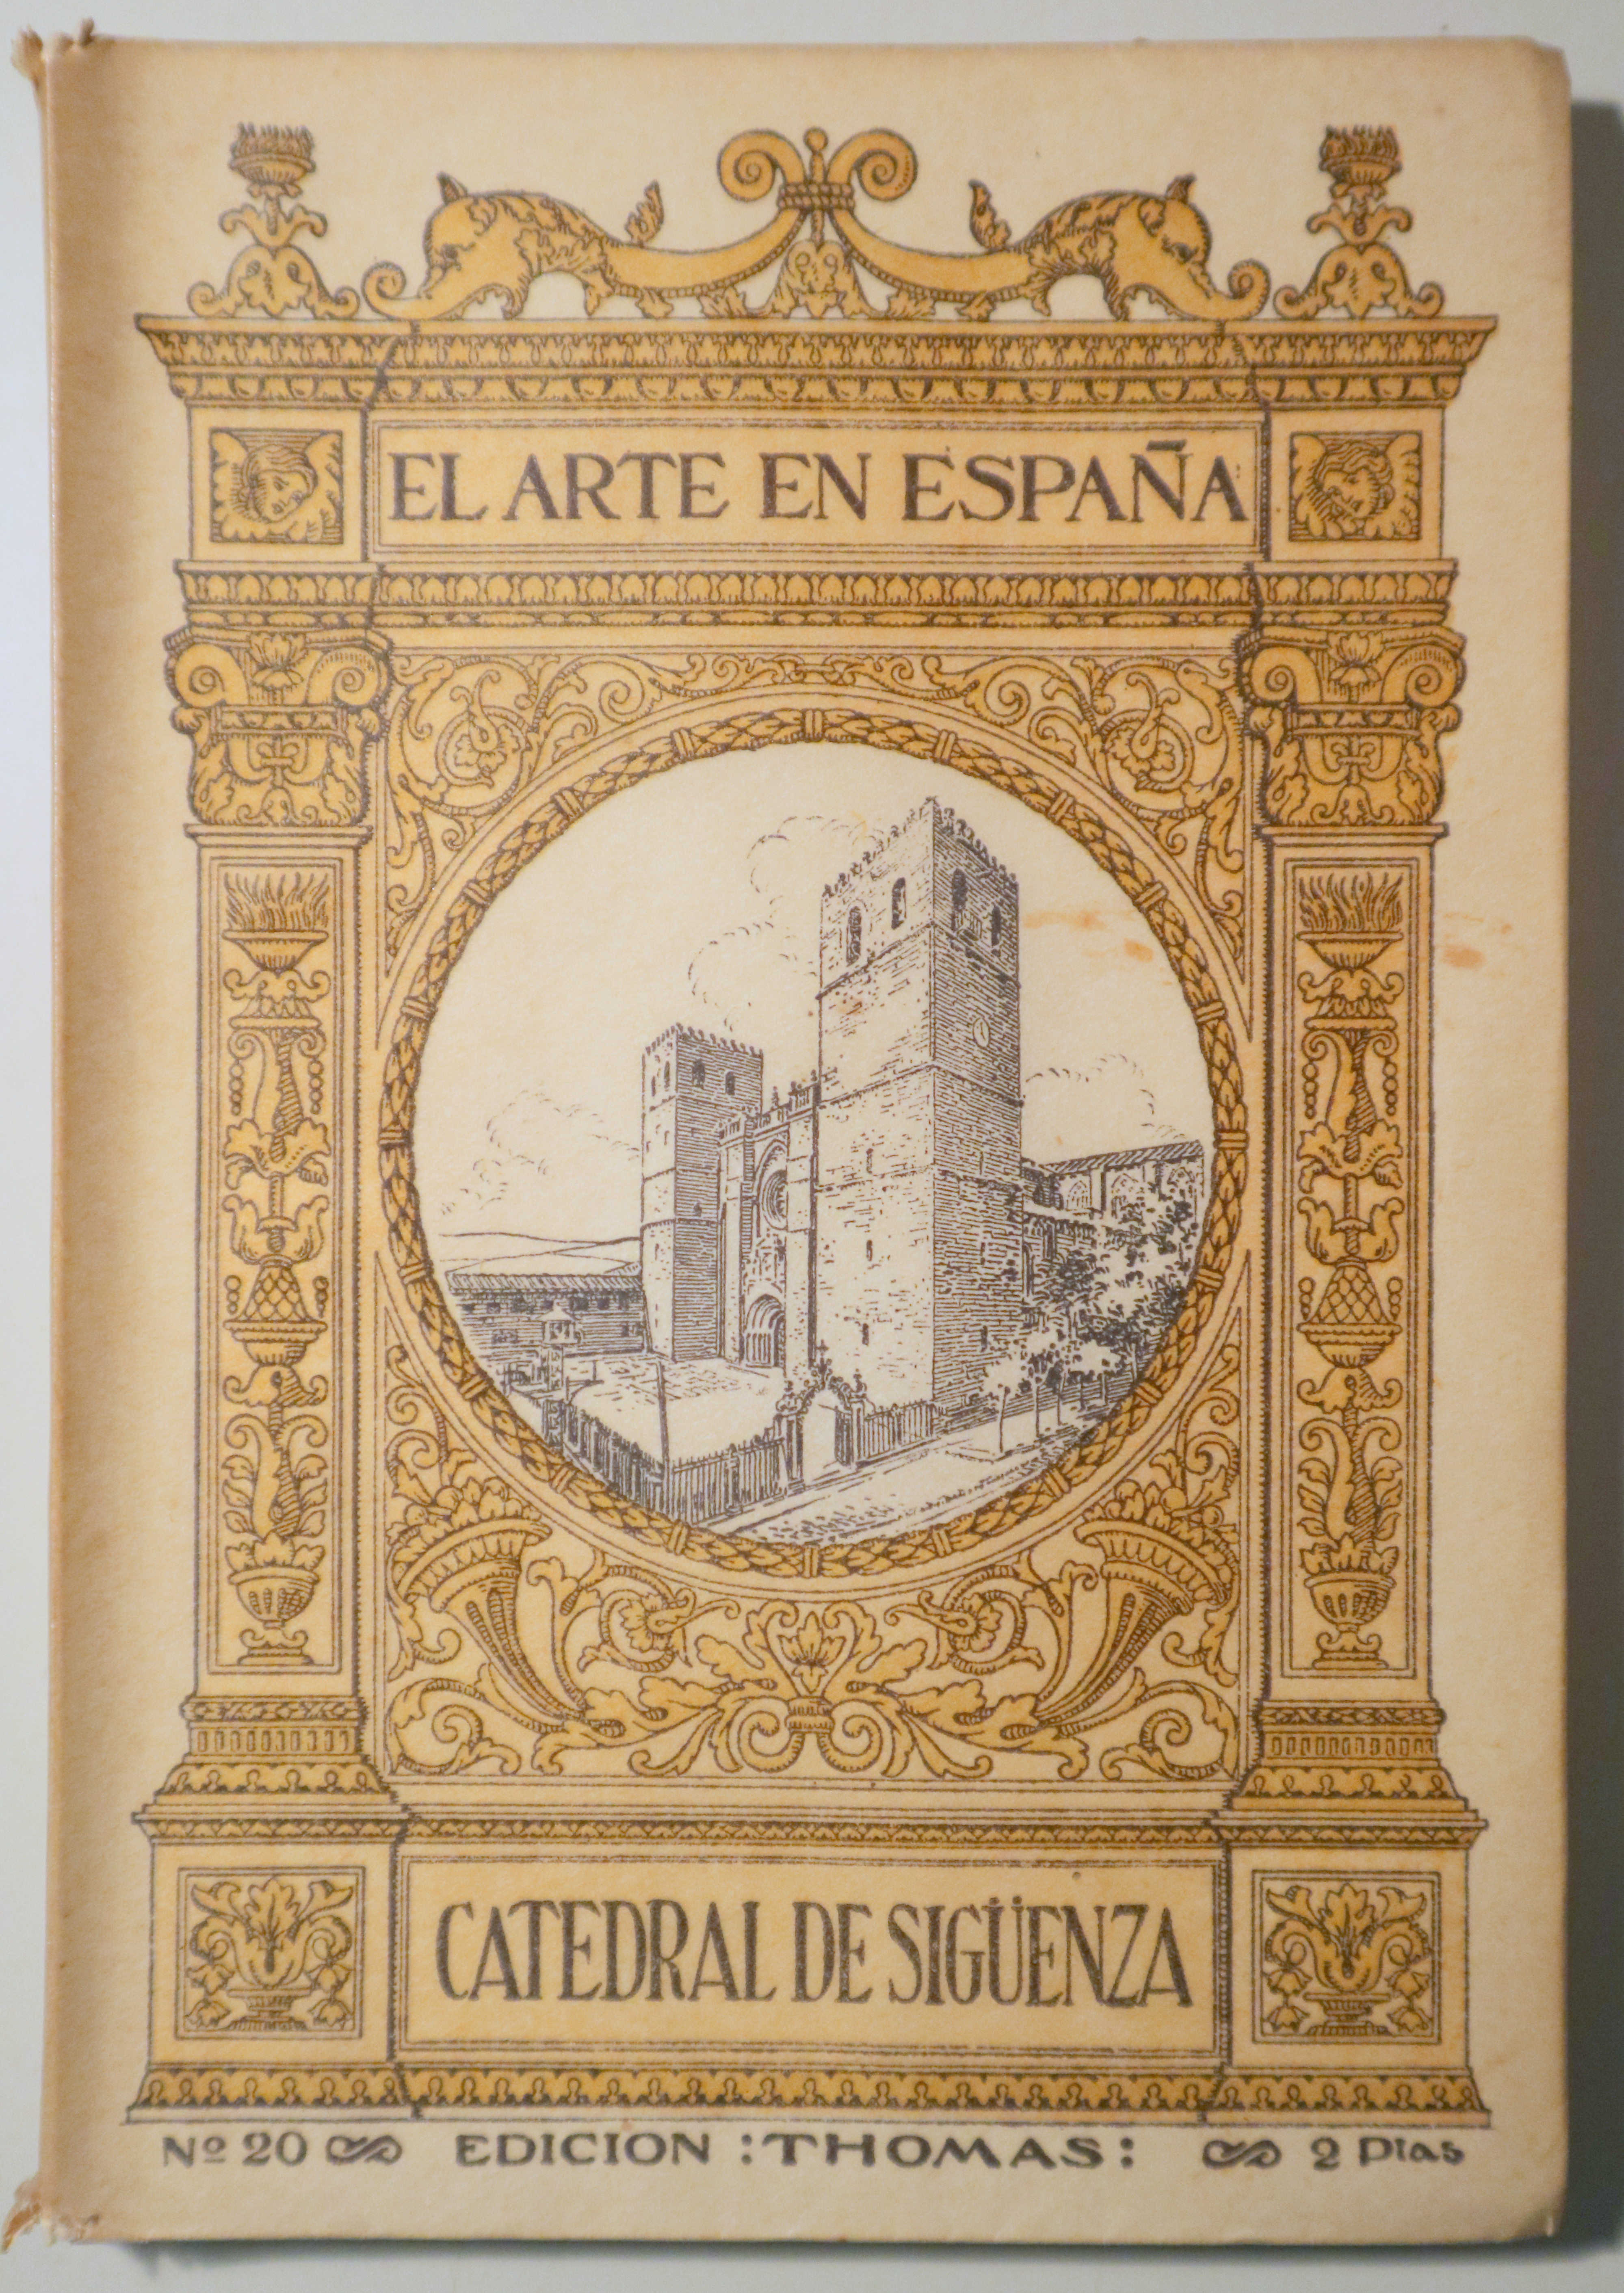 EL ARTE EN ESPAÑA nº 20. Catedral de Sigüenza - Barcelona s/f - Muy ilustrado